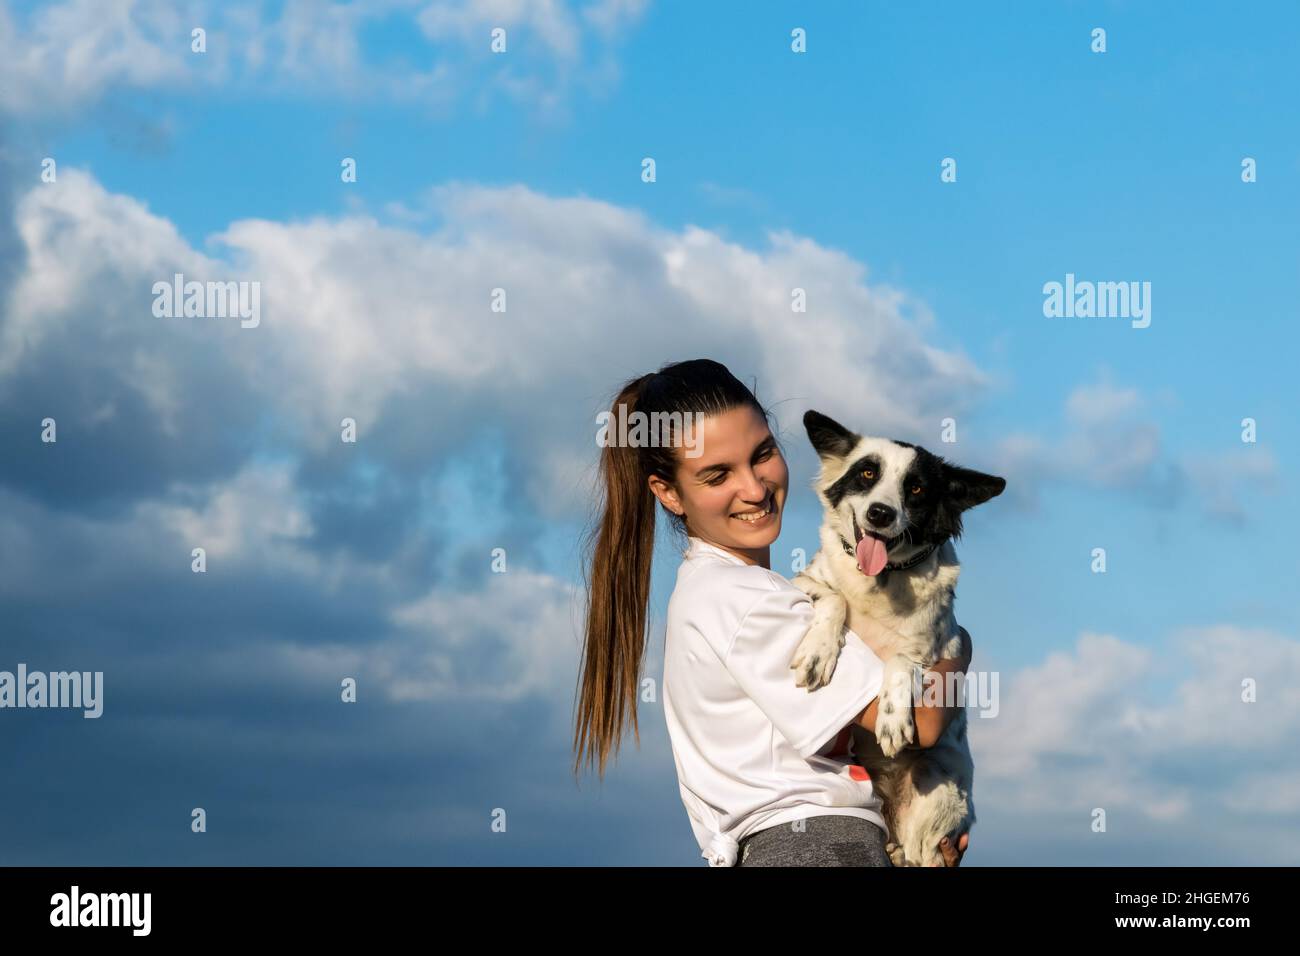 Die junge lateinische Frau hält ihren Hundefreund in den Armen und lächelt sie an. Der Hund blickt auf die Kamera, Wolken und blauer Himmel im Hintergrund Stockfoto